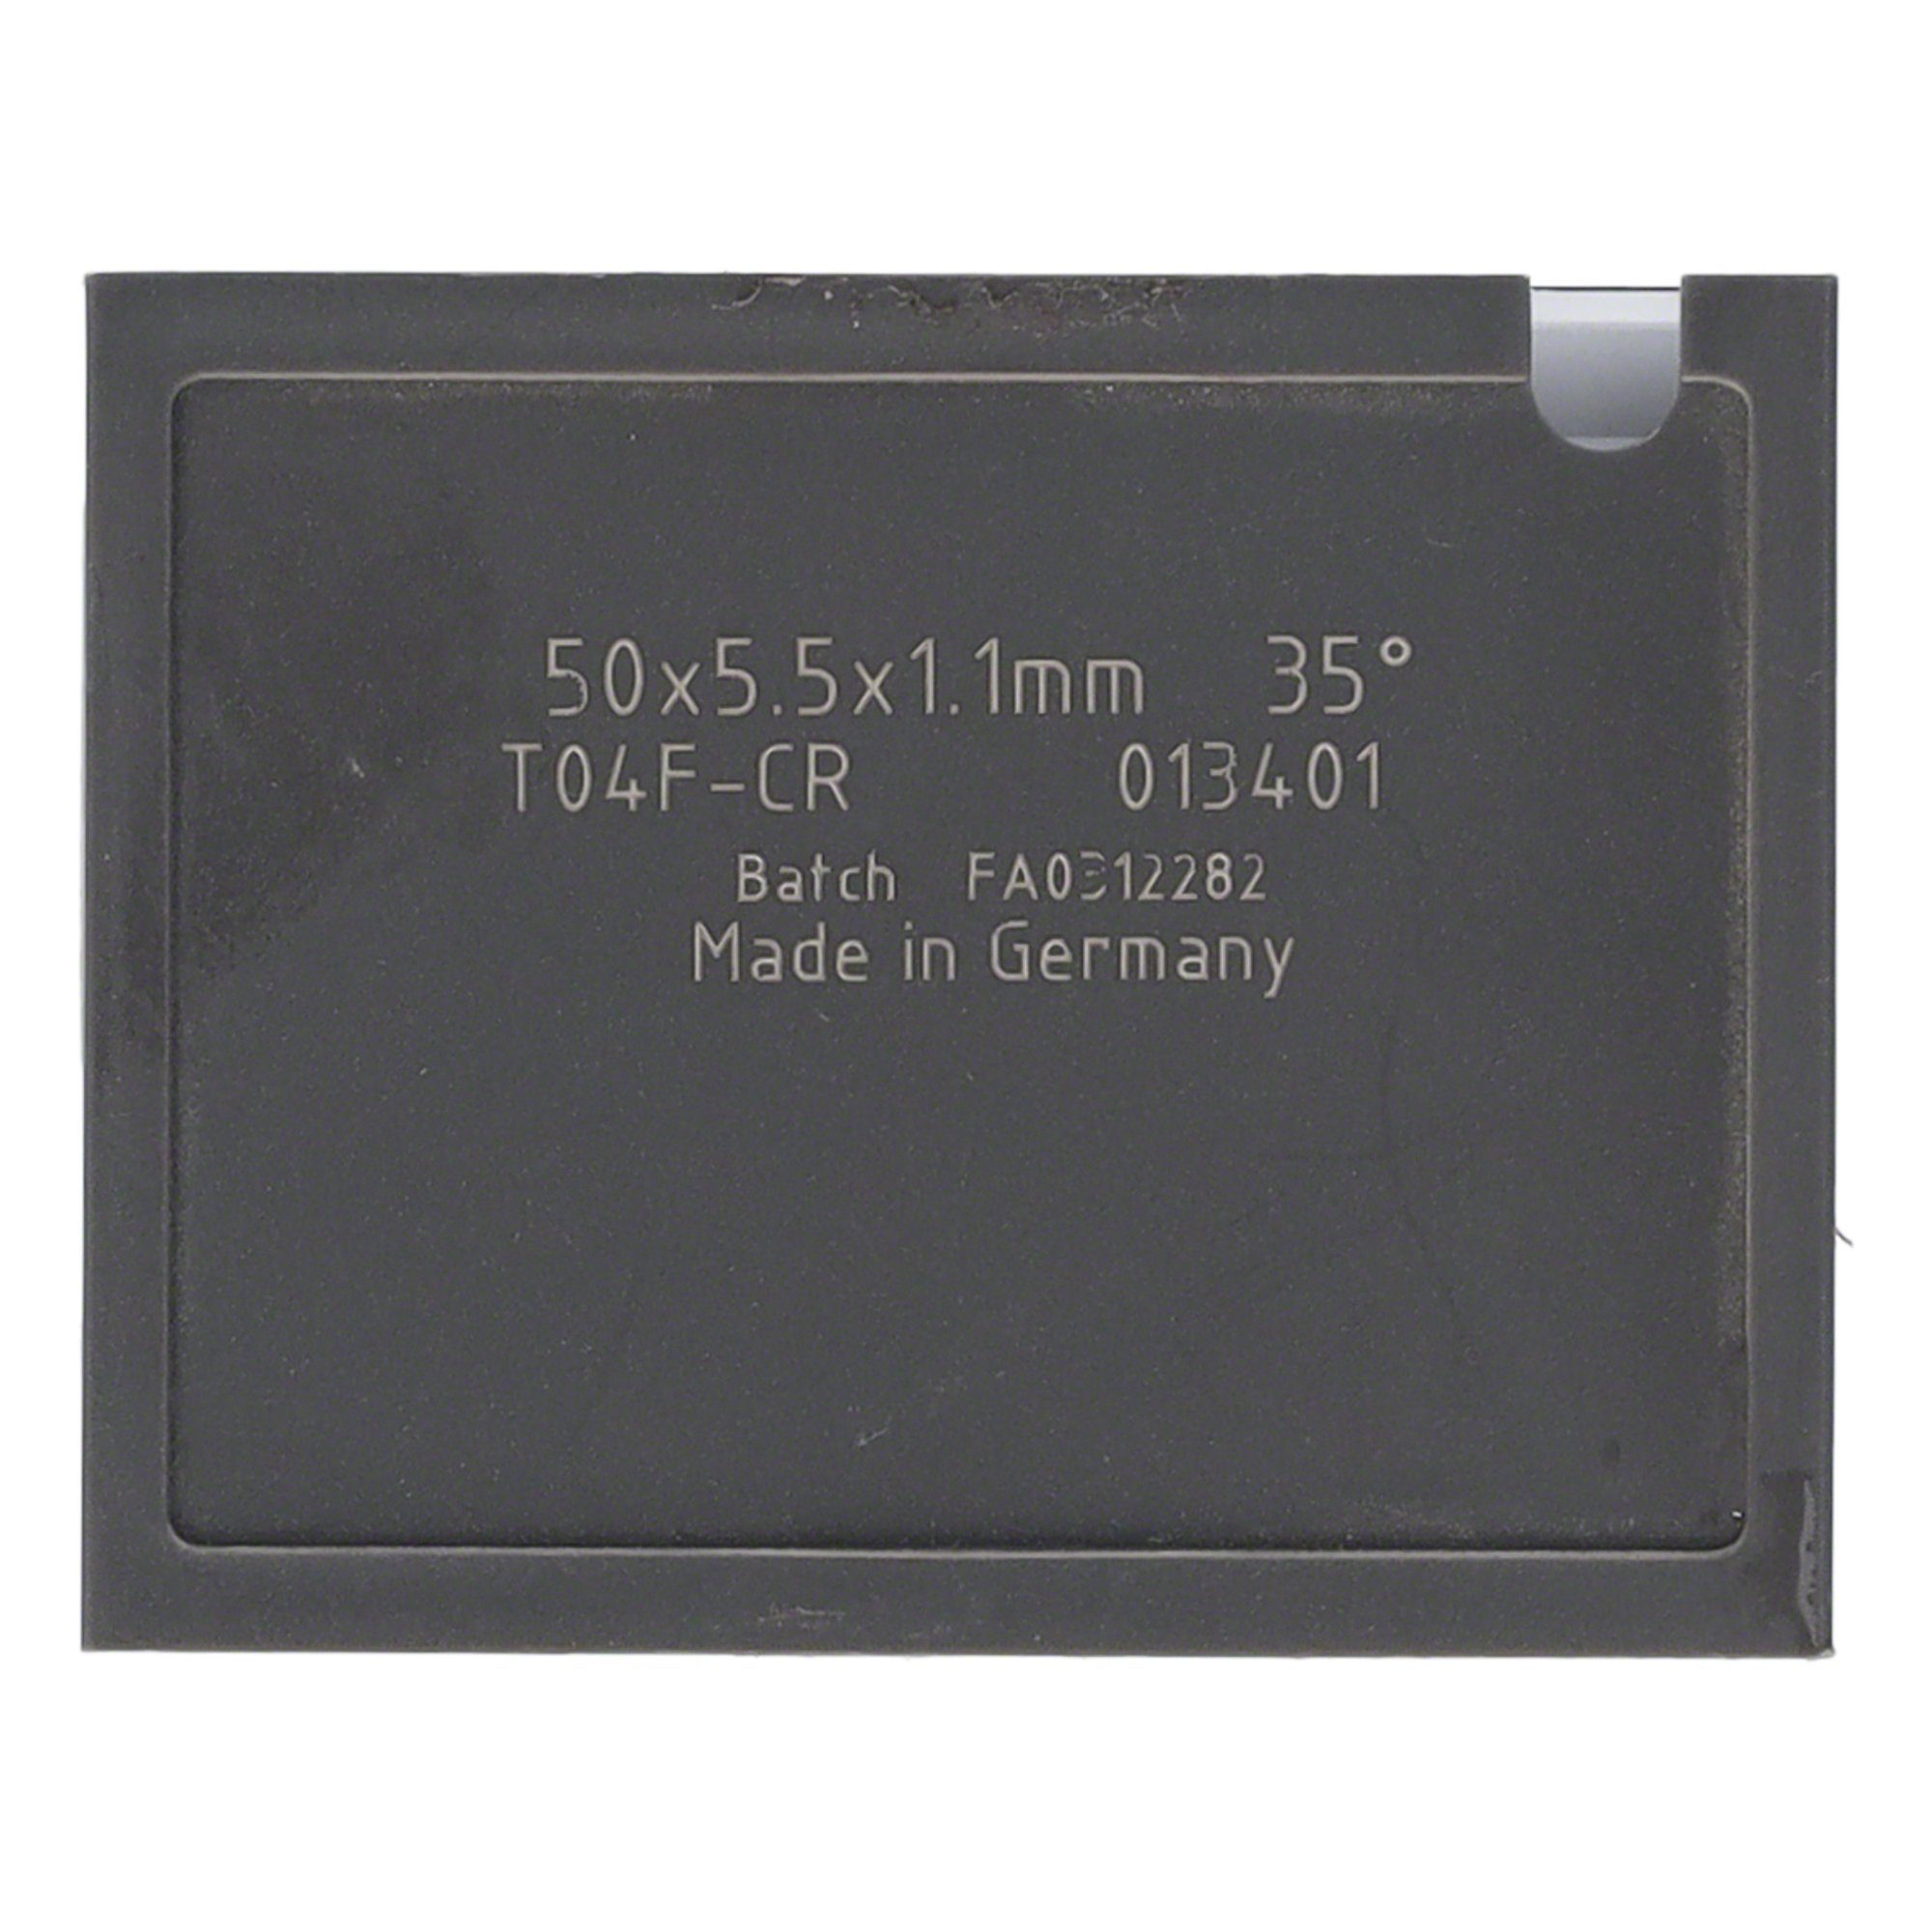 Tigra Wendeplattenfräser Mini-Wendeplatte 38 Brust und T04F Quernut - 20x5,5x1,1mm St. 10